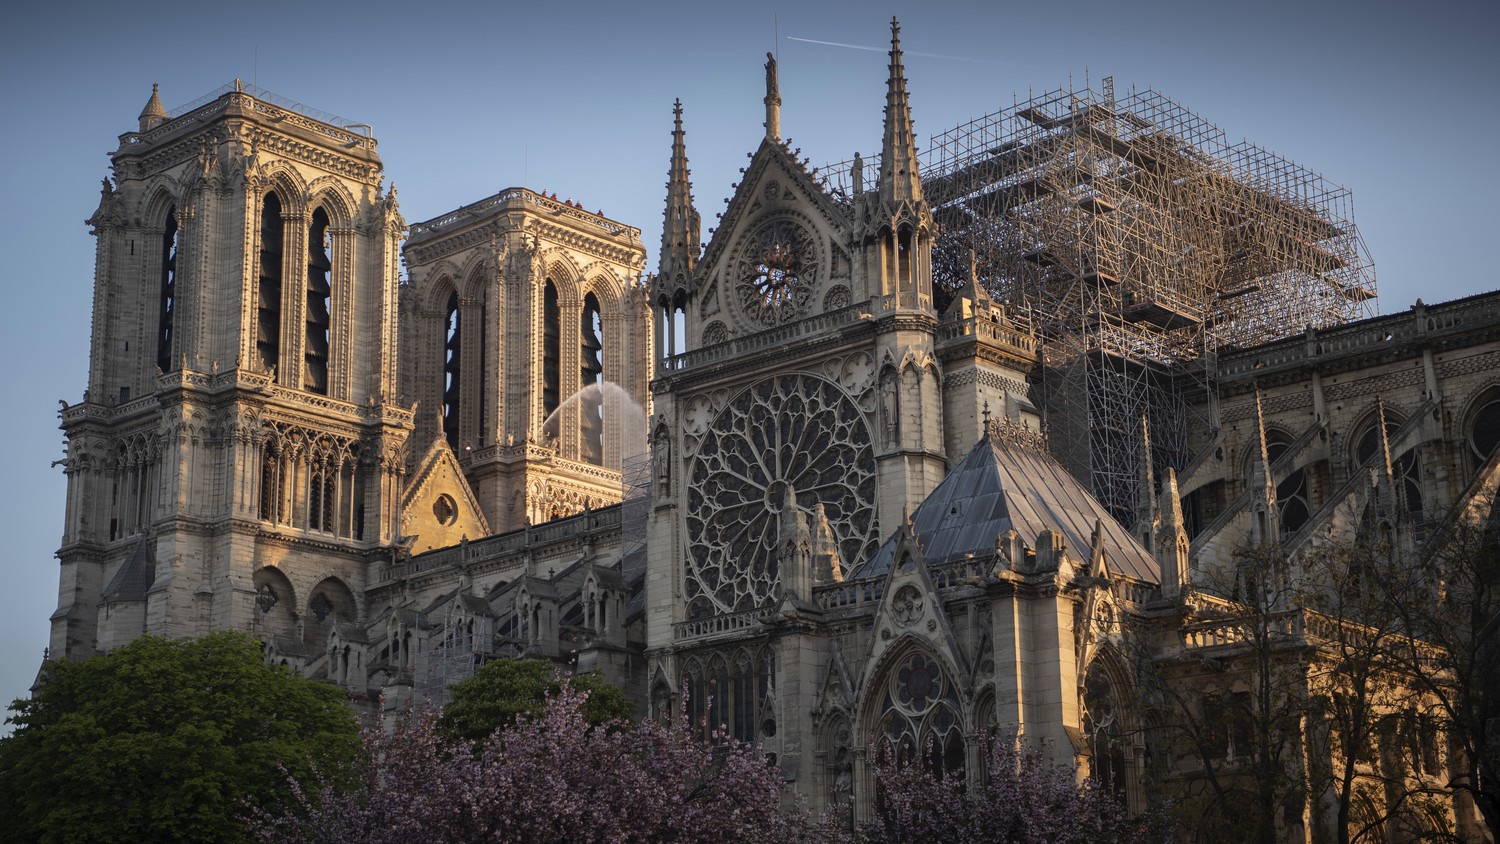 A Notre Dame felújításához nyújtott támogatás átutalásáról is döntött a közgyűlés